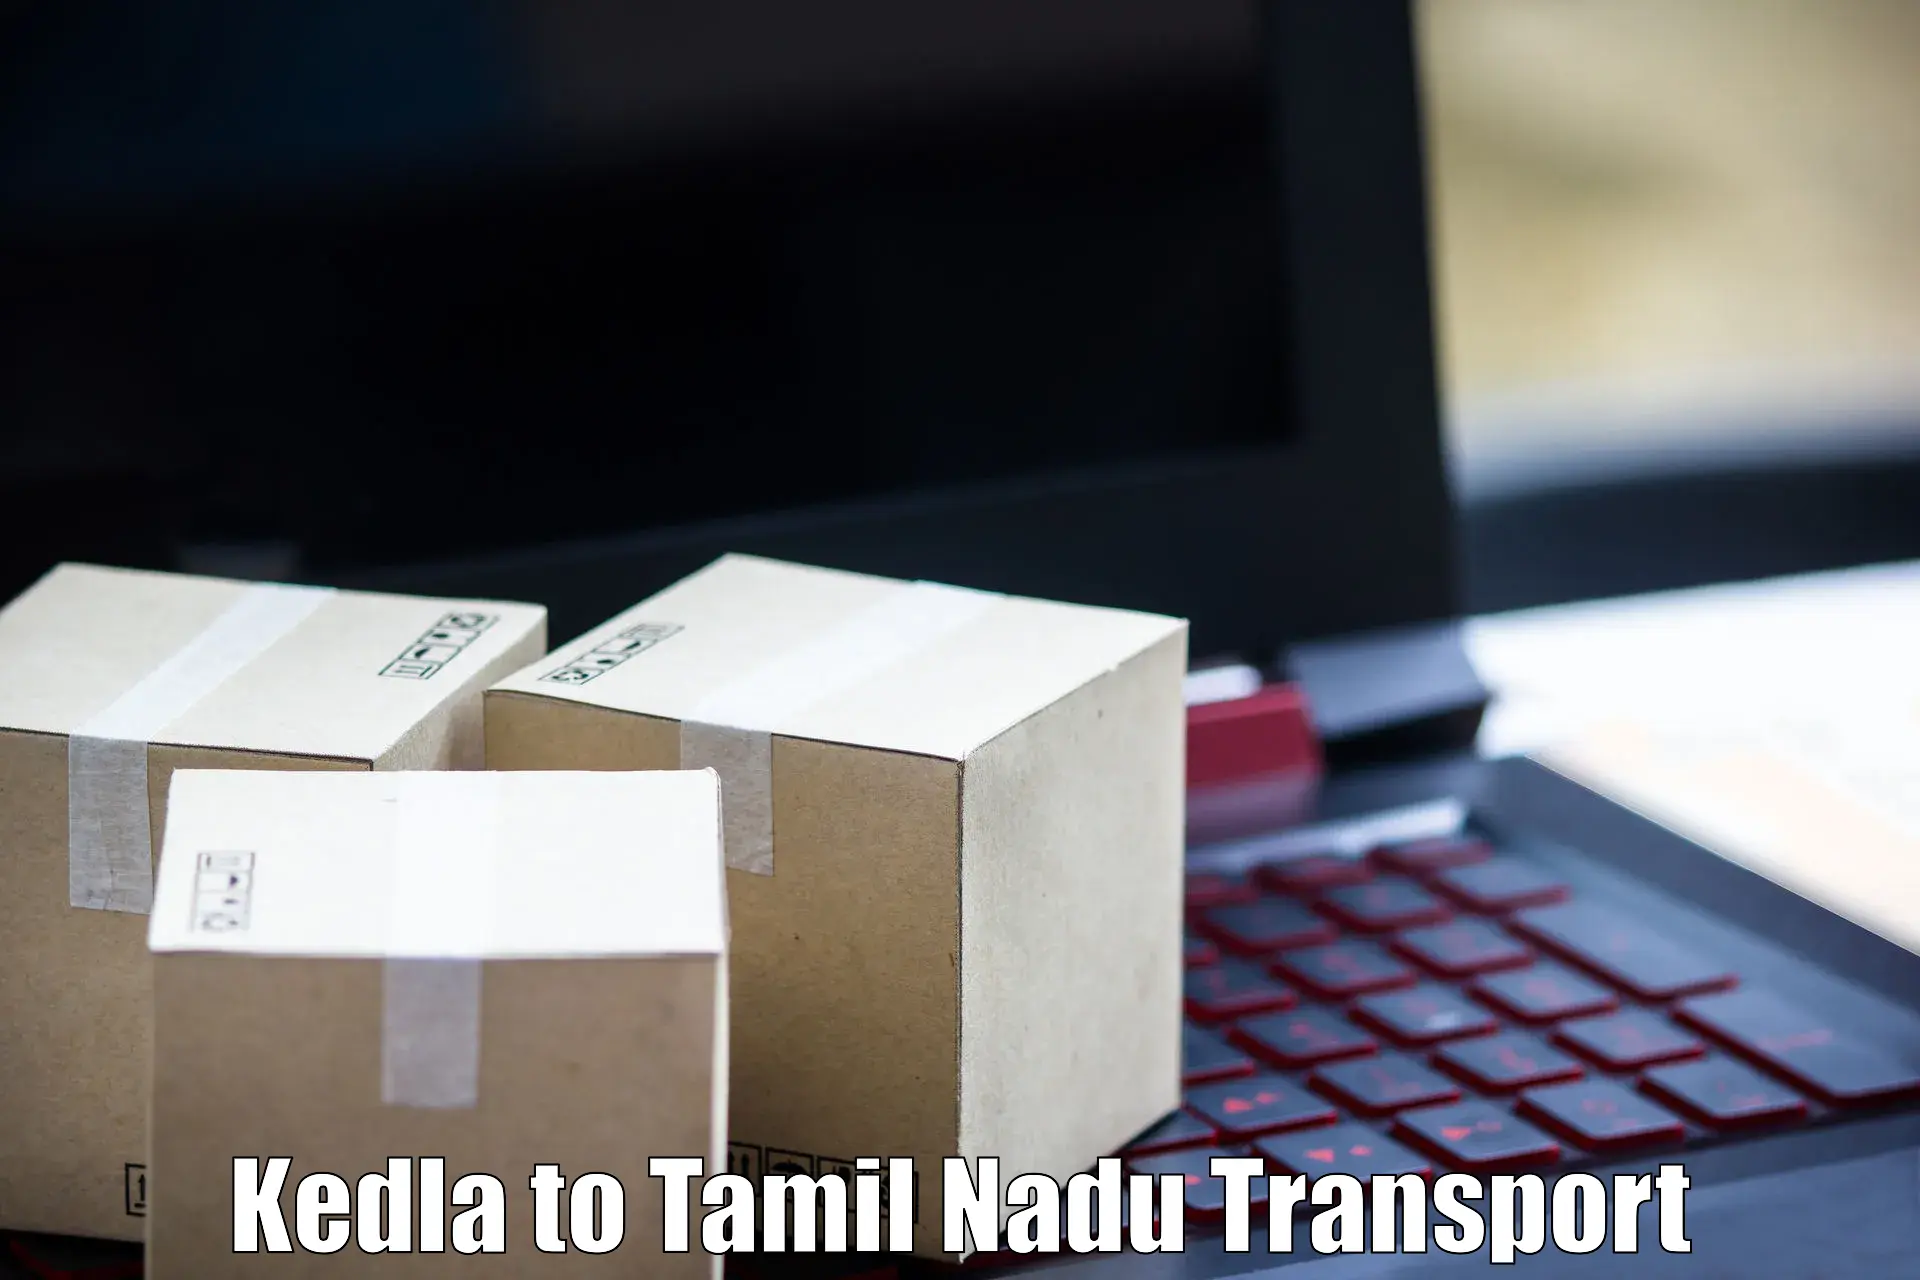 Intercity goods transport Kedla to Tamil Nadu